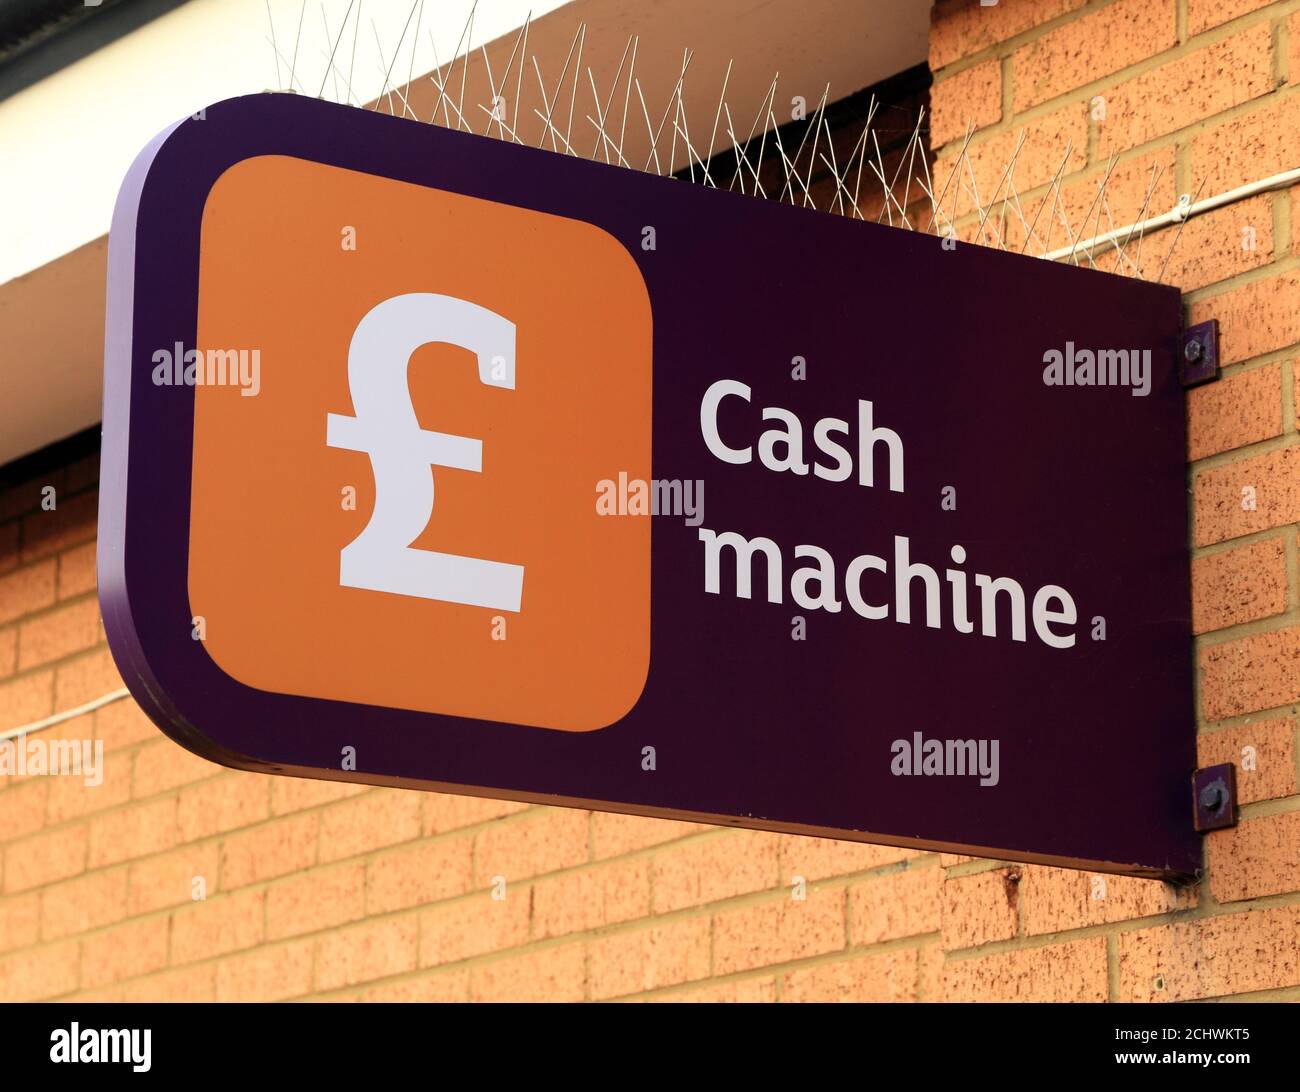 Geldautomat, Geldautomat, Schild, Sainsbury's Supermarkt, Hunstanton, Norfolk, England, Großbritannien Stockfoto